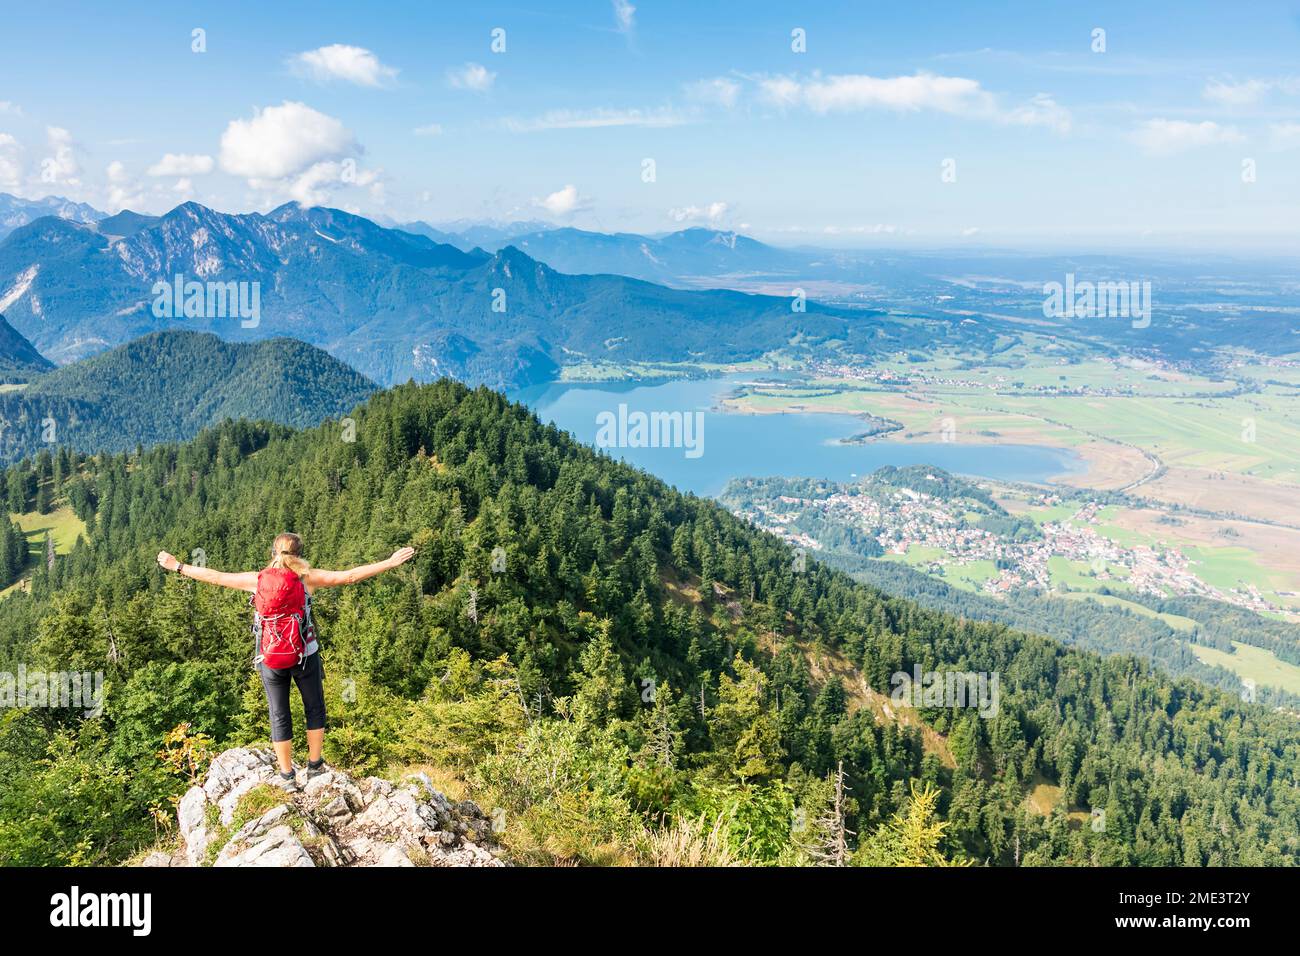 Germania, Baviera, Kochel am See, escursionista femminile in piedi in cima alla montagna con lago Kochelsee sullo sfondo Foto Stock